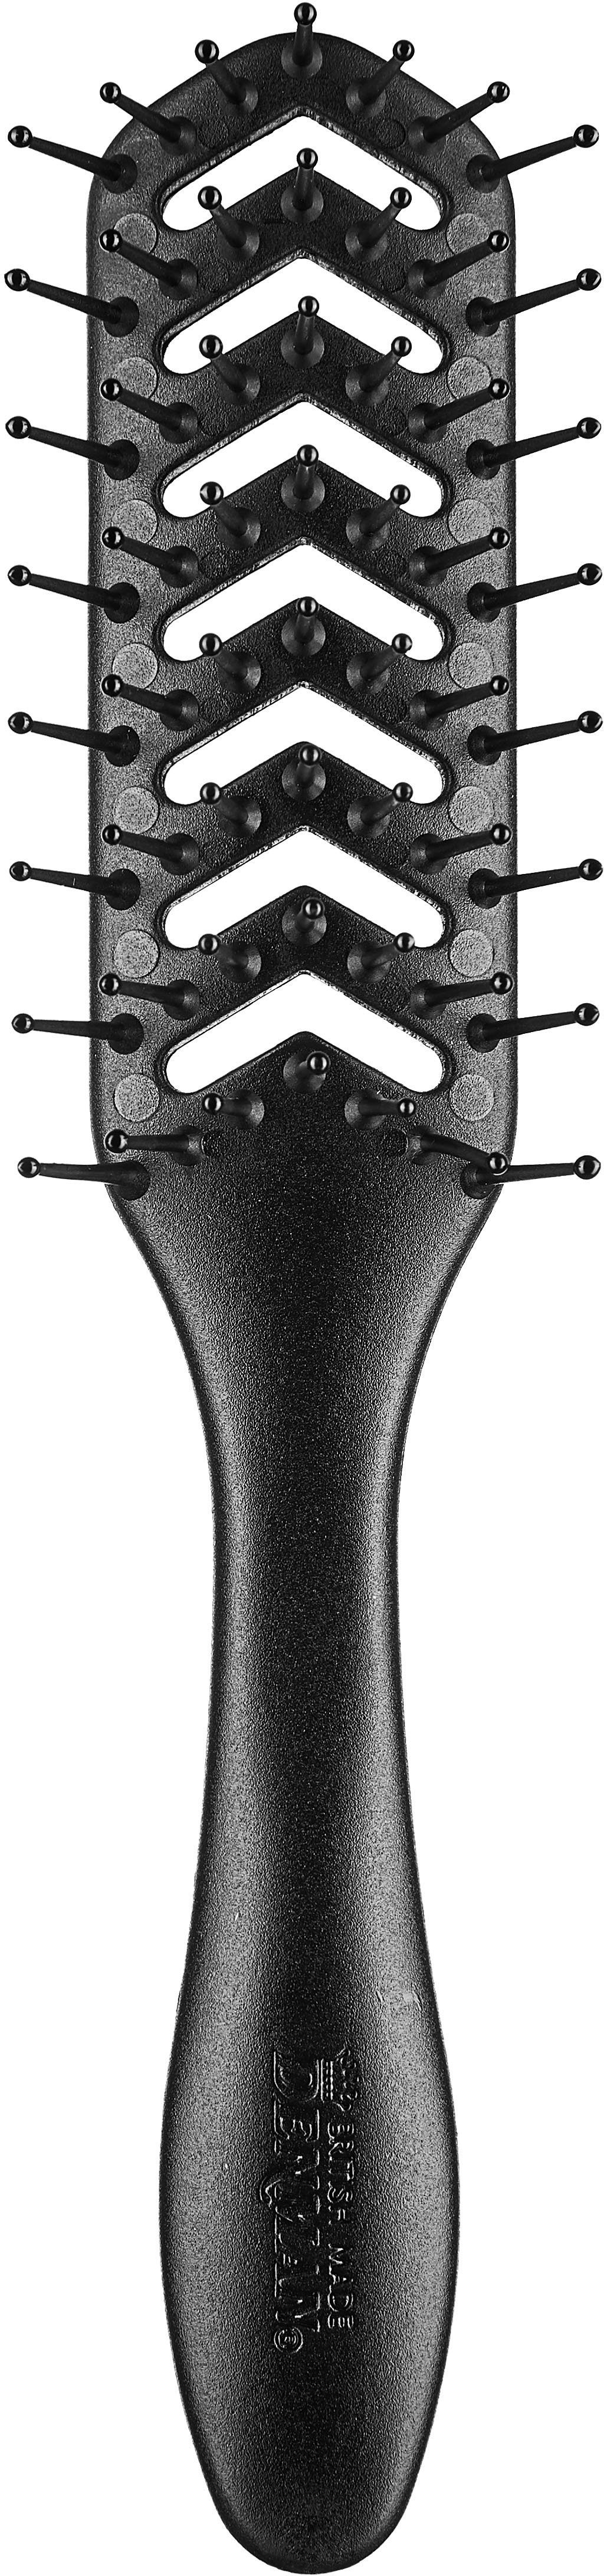 DENMAN Skelettbürste D200 Skelettbürste, 7-reihig, für optimales Styling durch maximale Luftzirkulation schwarz